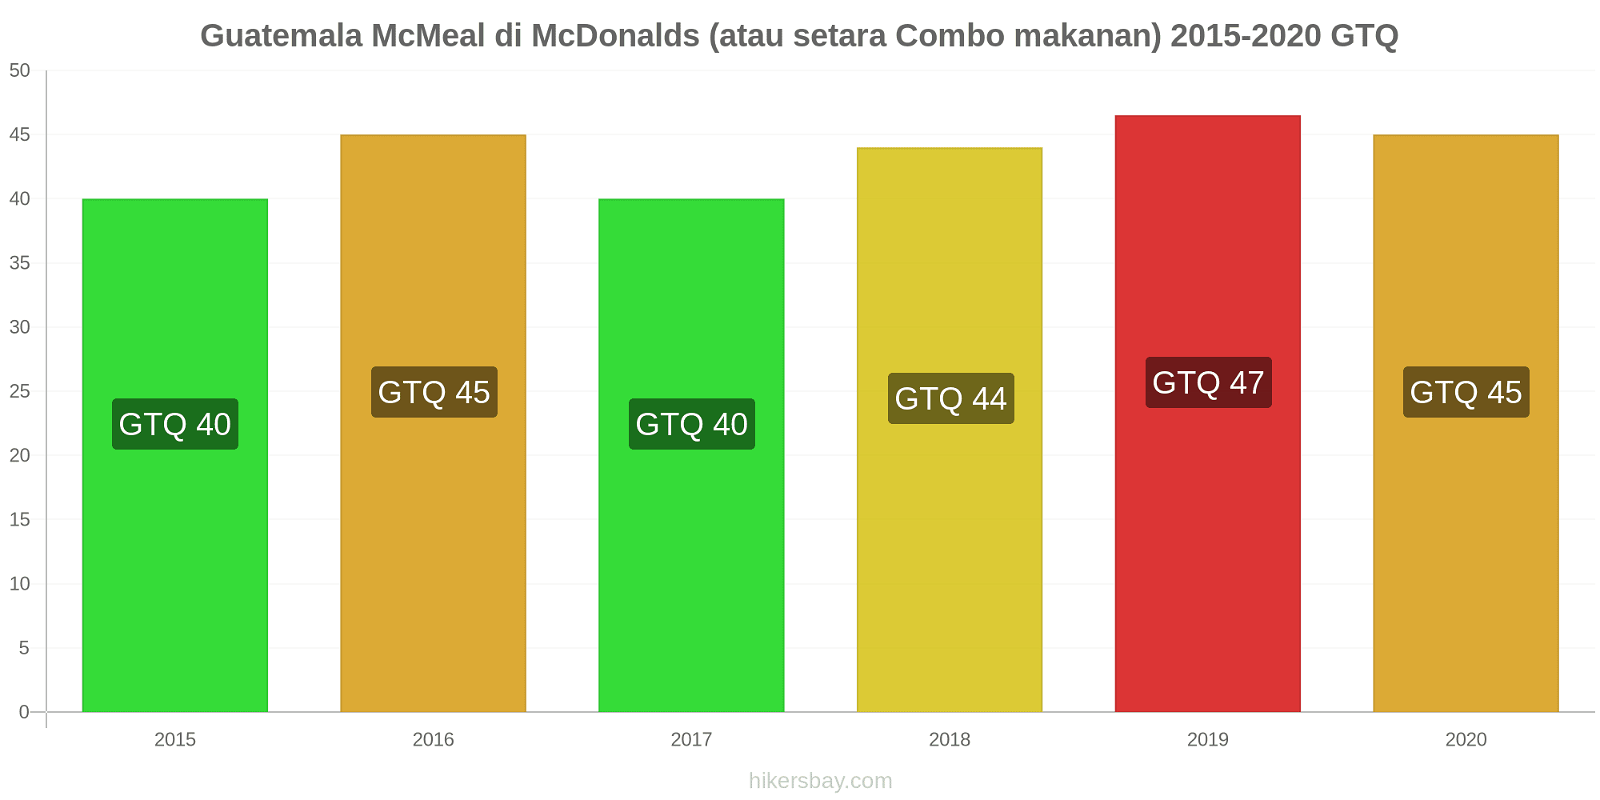 Guatemala perubahan harga McMeal di McDonalds (atau setara Combo makanan) hikersbay.com